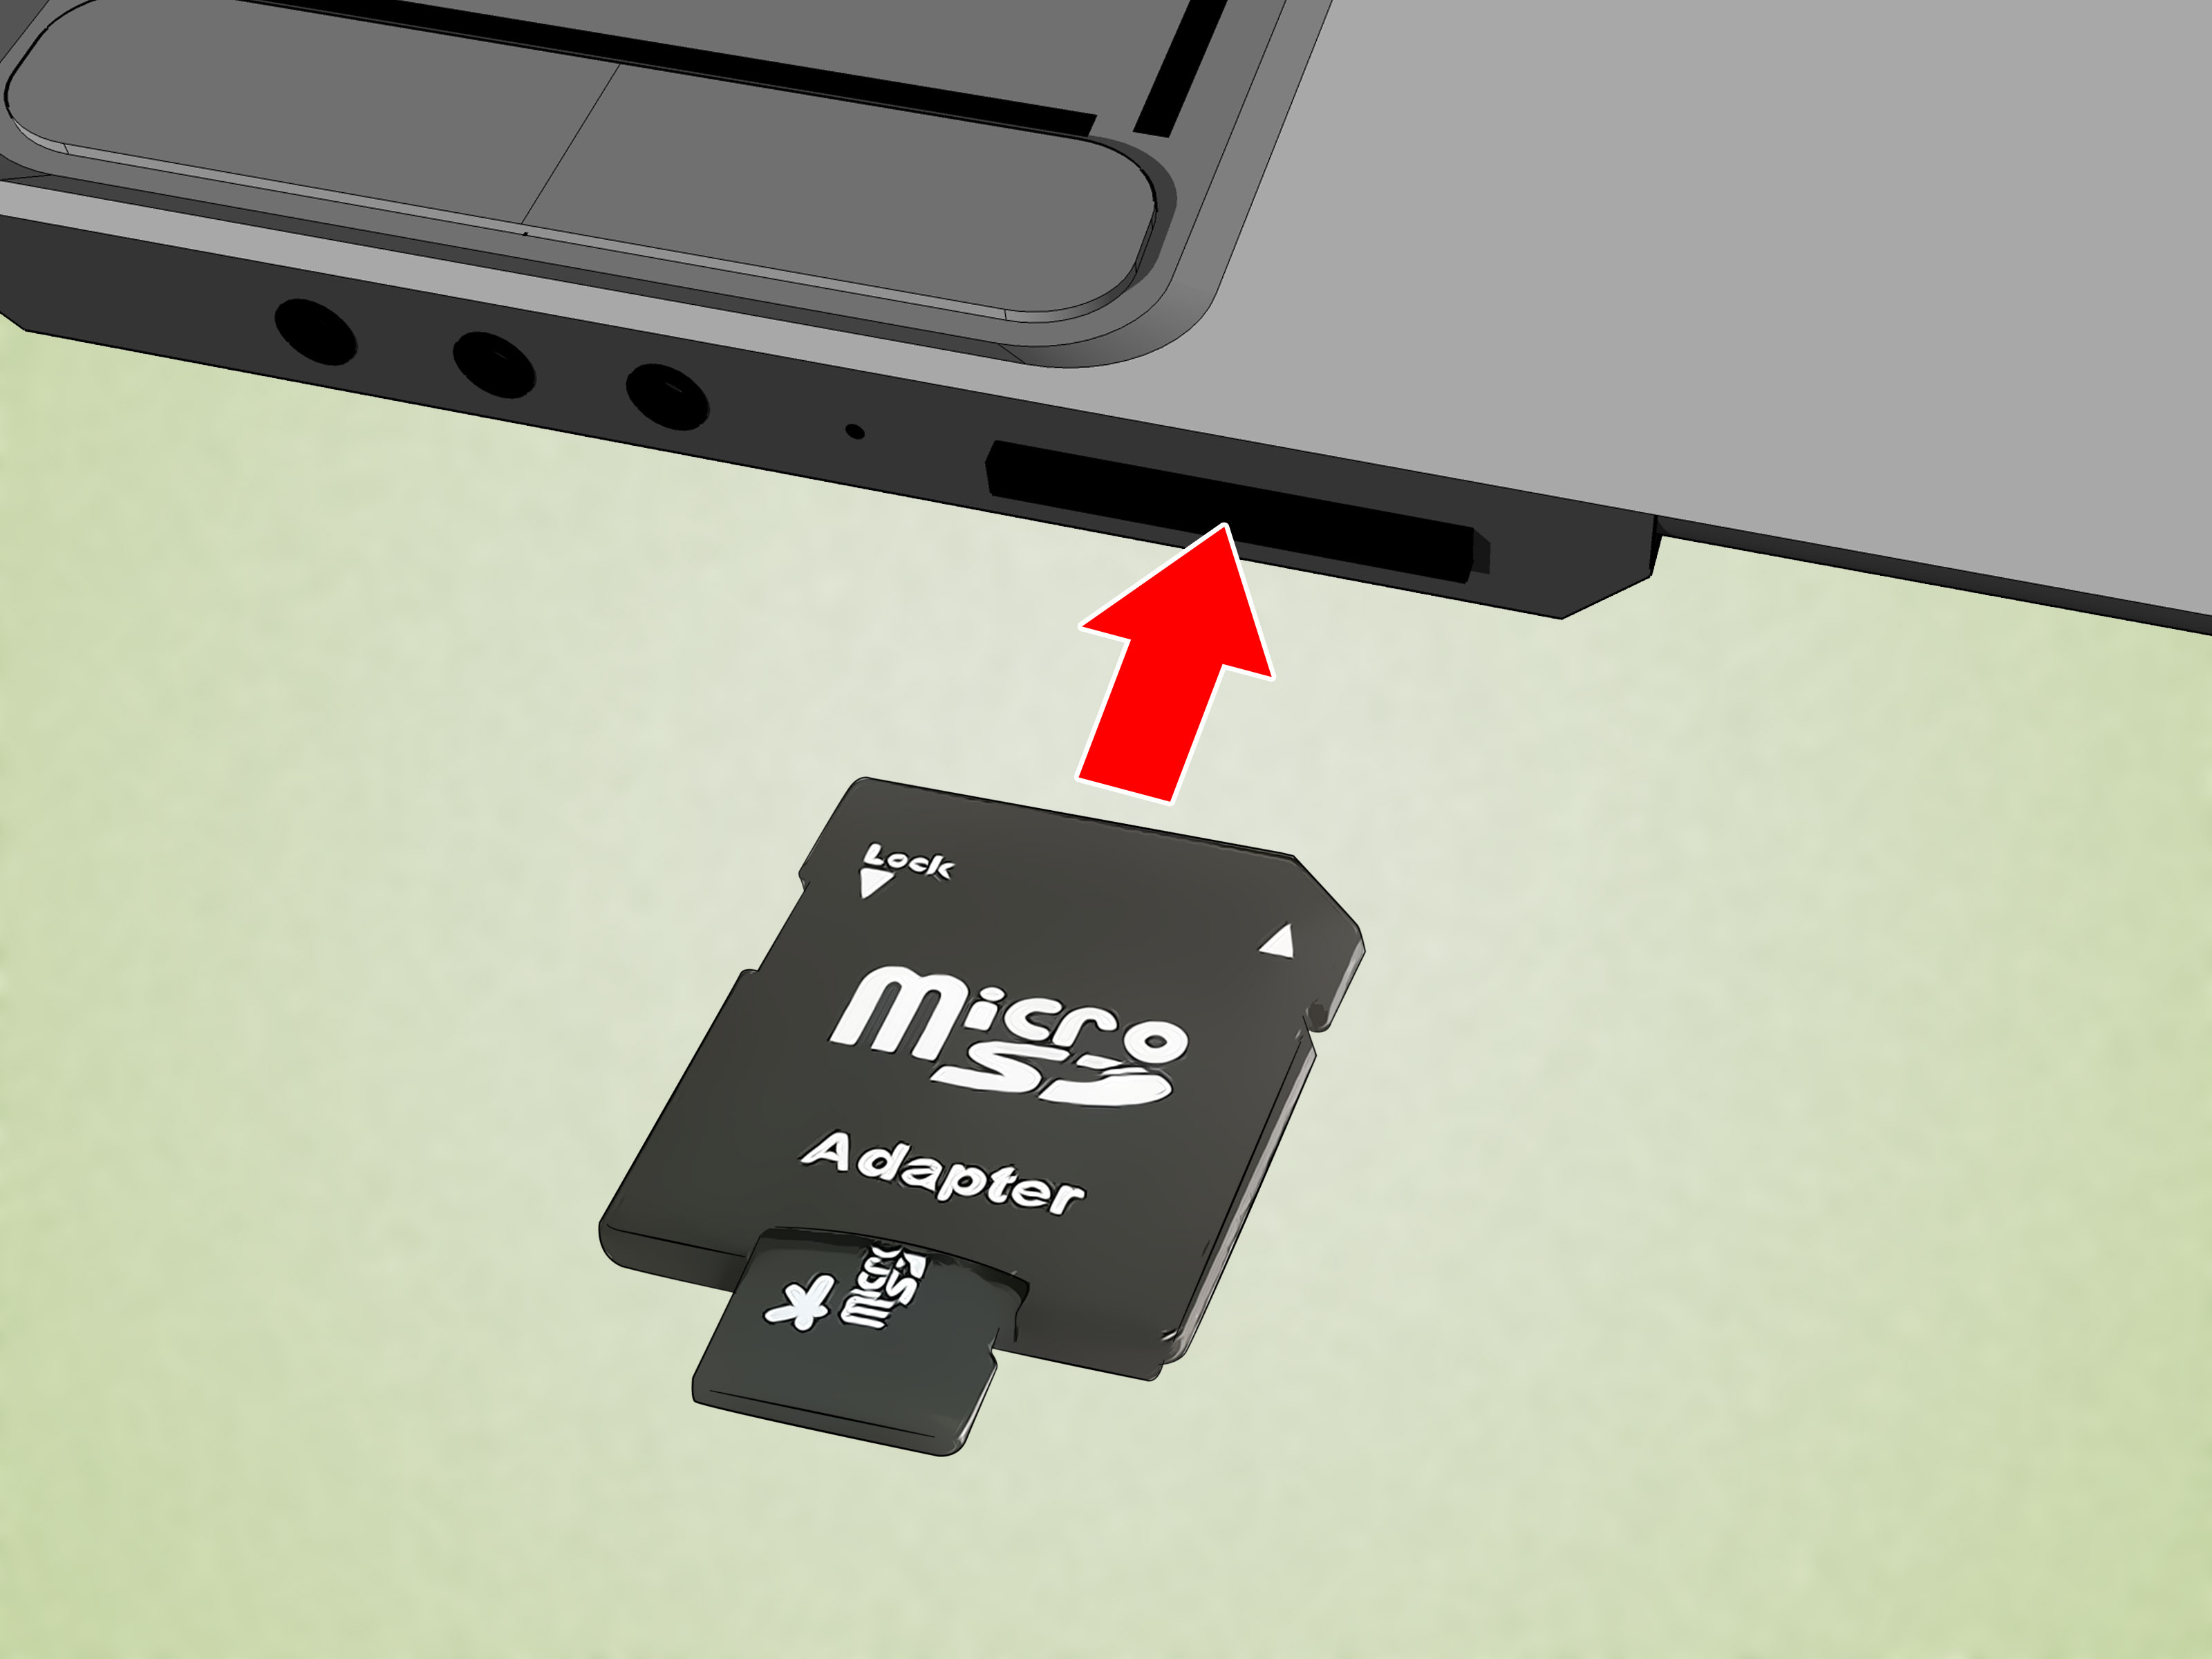 Mi PC no la tarjeta microSD - HispaTecno.net